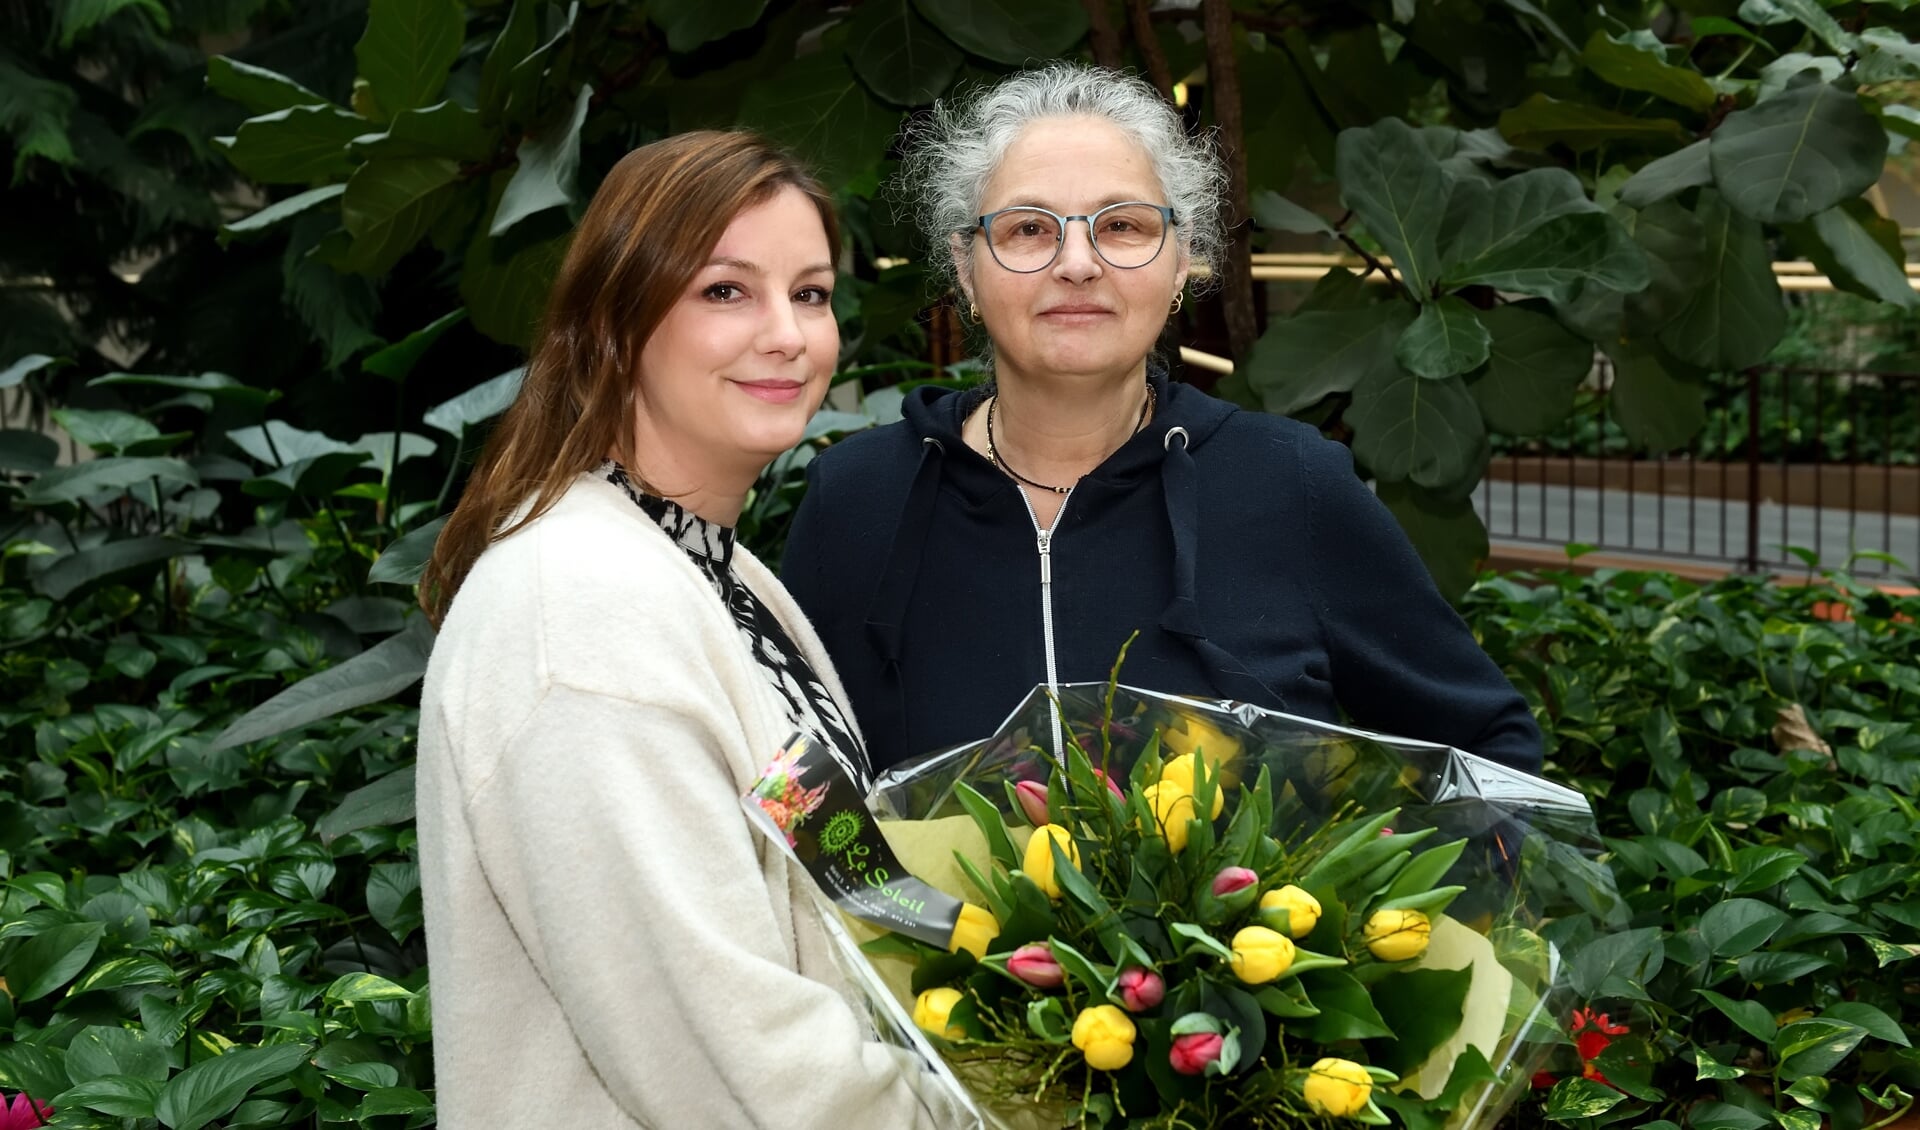 Dayenne overhandigd de mooie bos bloemen aan haar moeder Sylvia Postma 